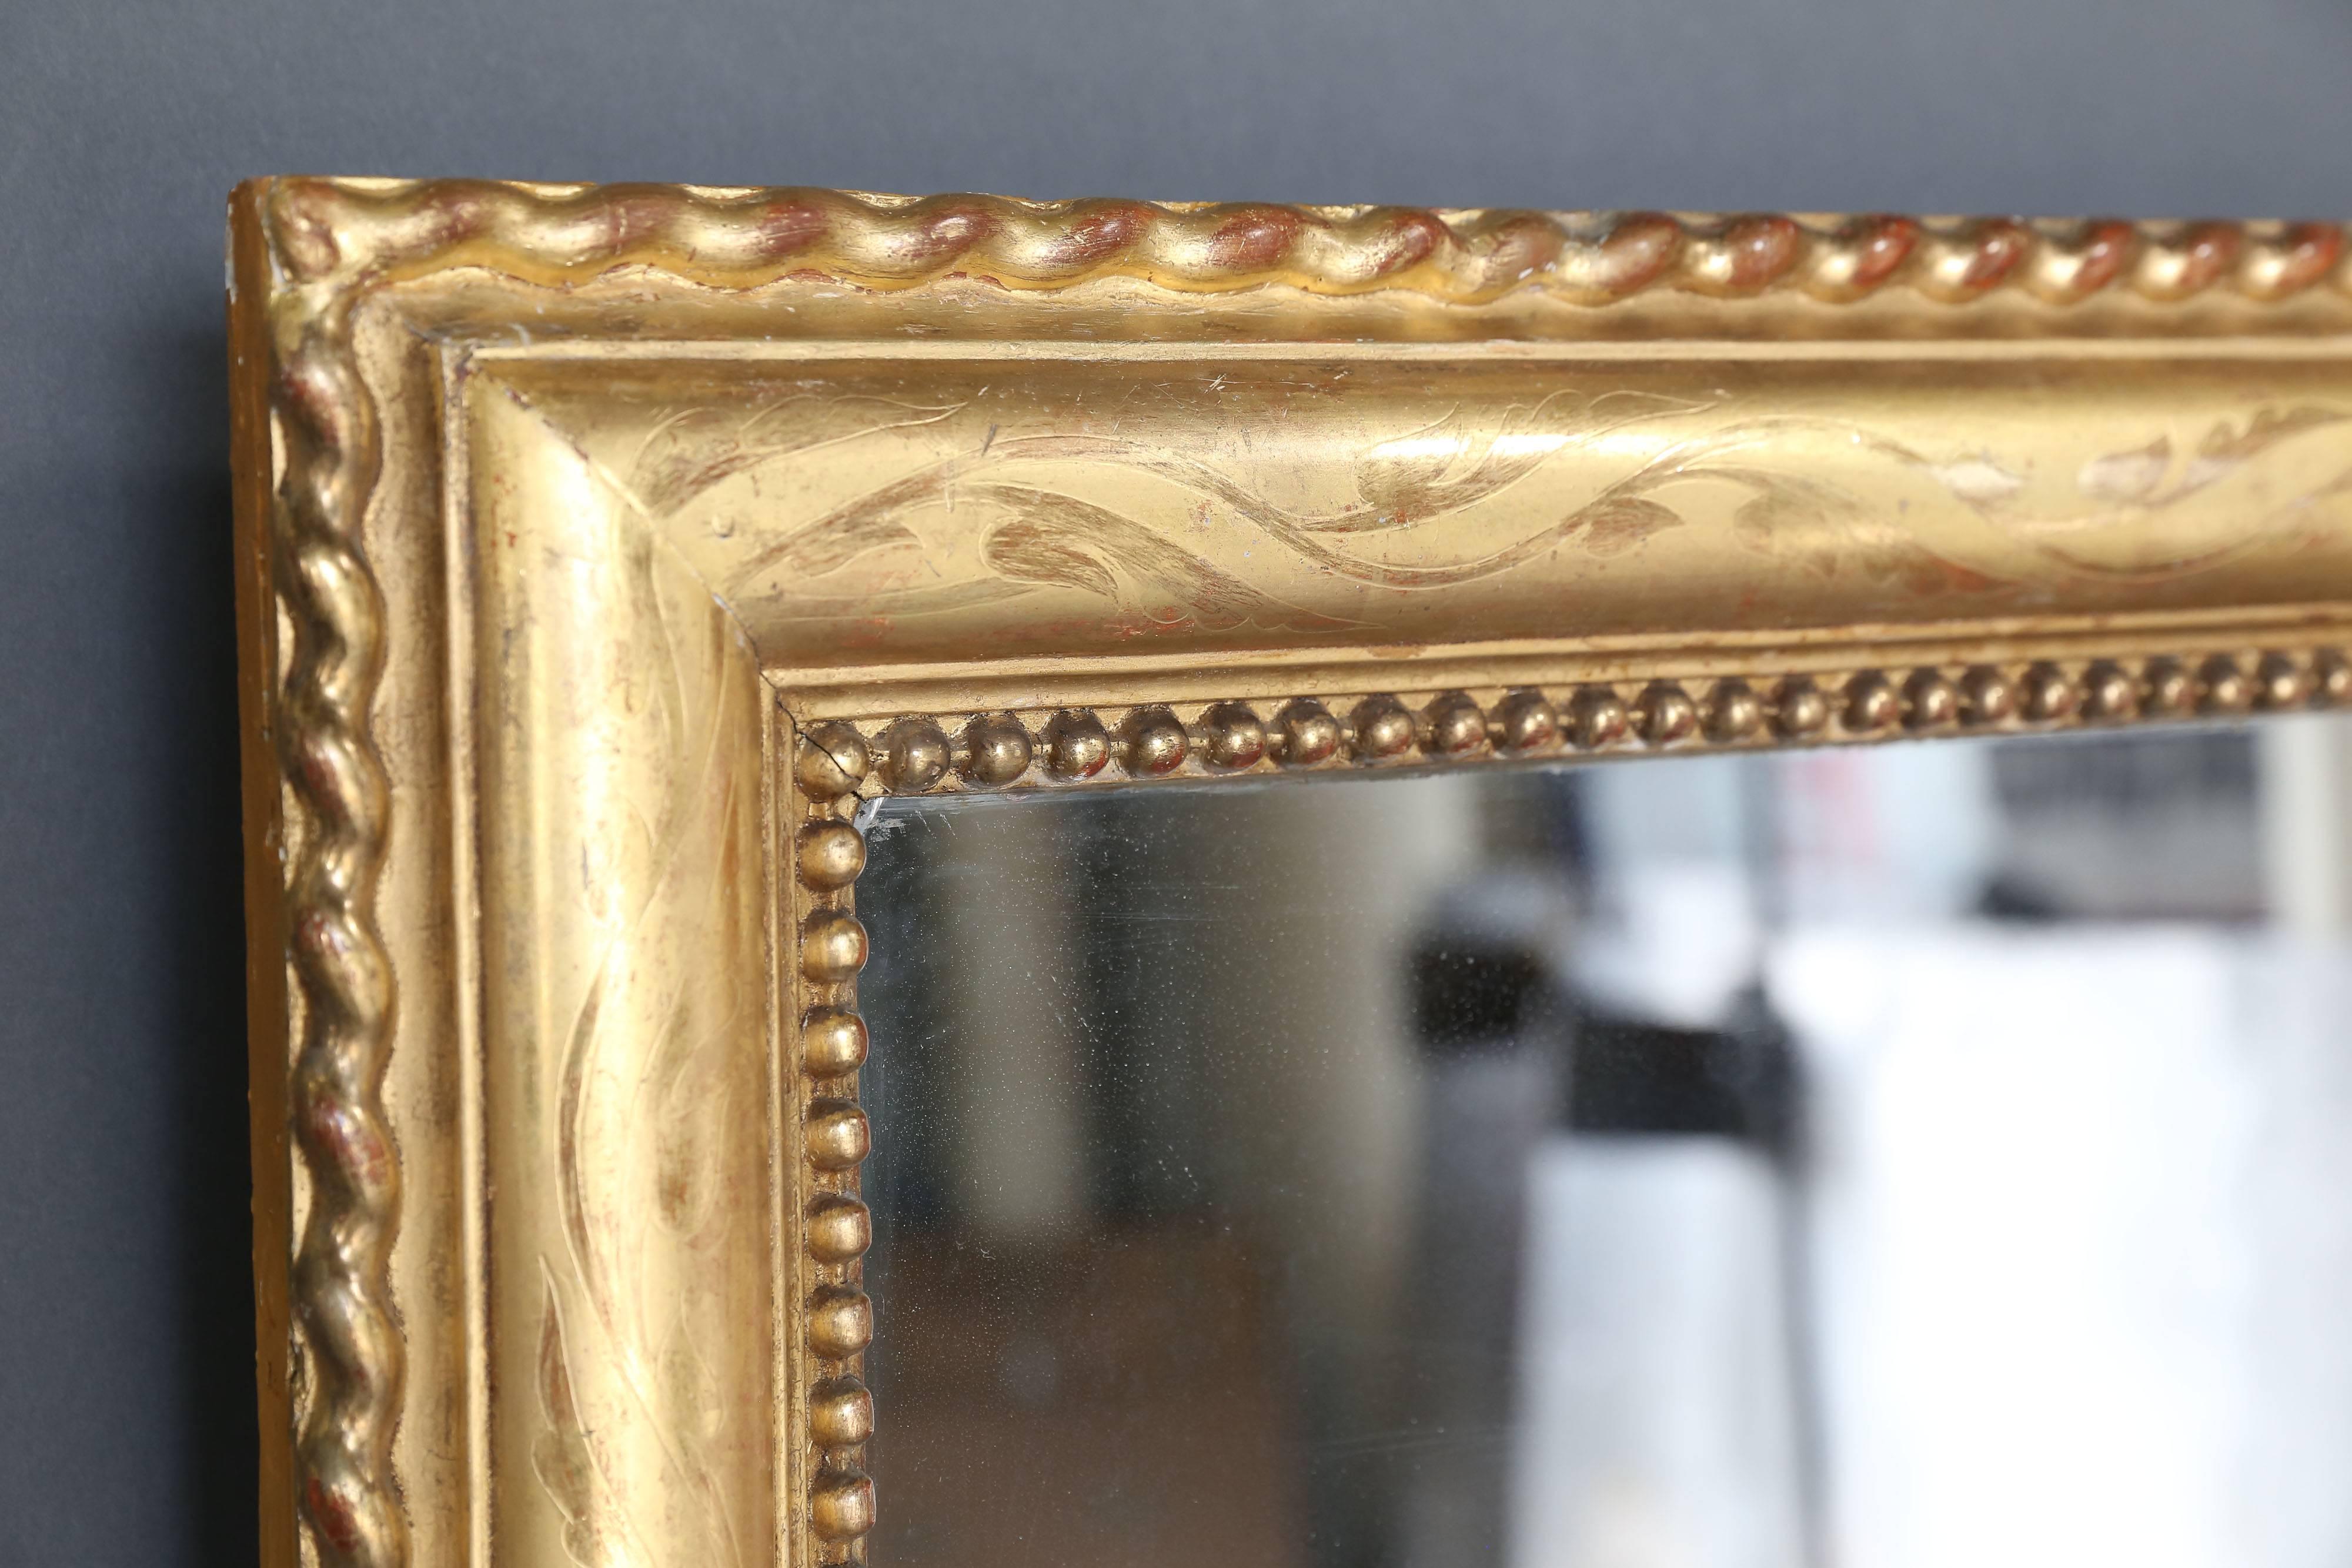 Grand miroir rectangulaire à trumeau en vermeil avec gravure et détail de corde autour du périmètre gravé. Dans le périmètre intérieur, on retrouve le détail perlé que l'on voit fréquemment dans les miroirs français de cette période. Verre de